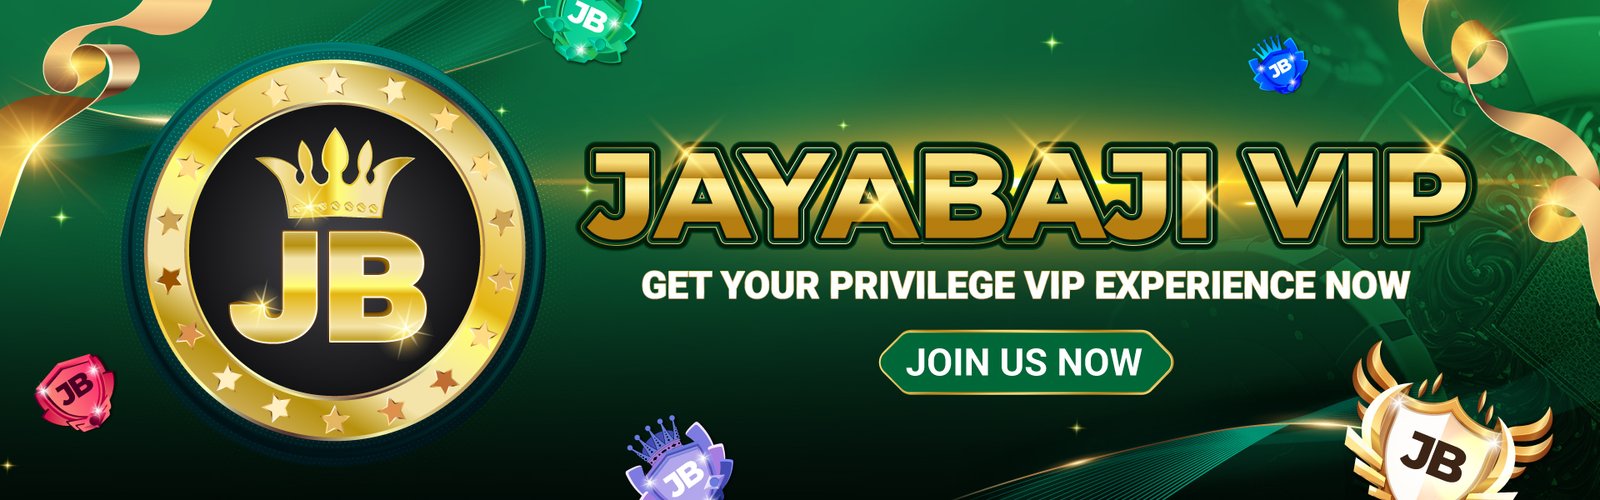 Jayabaji-VIP-Banner-1920x600-Eng